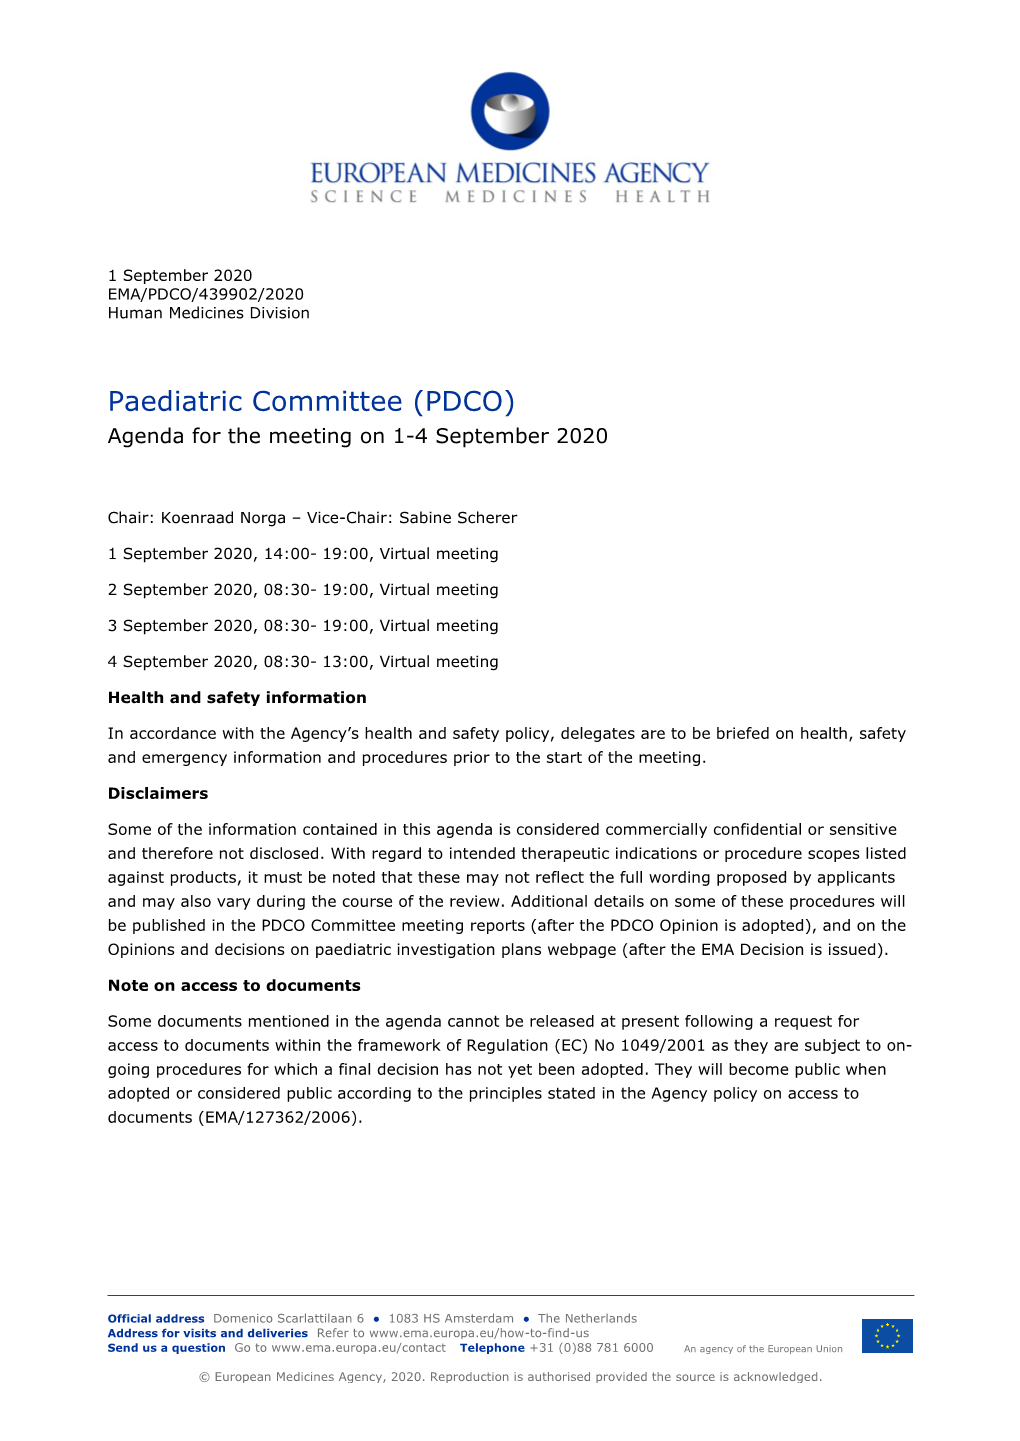 PDCO Agenda of the 1-4 September 2020 Meeting